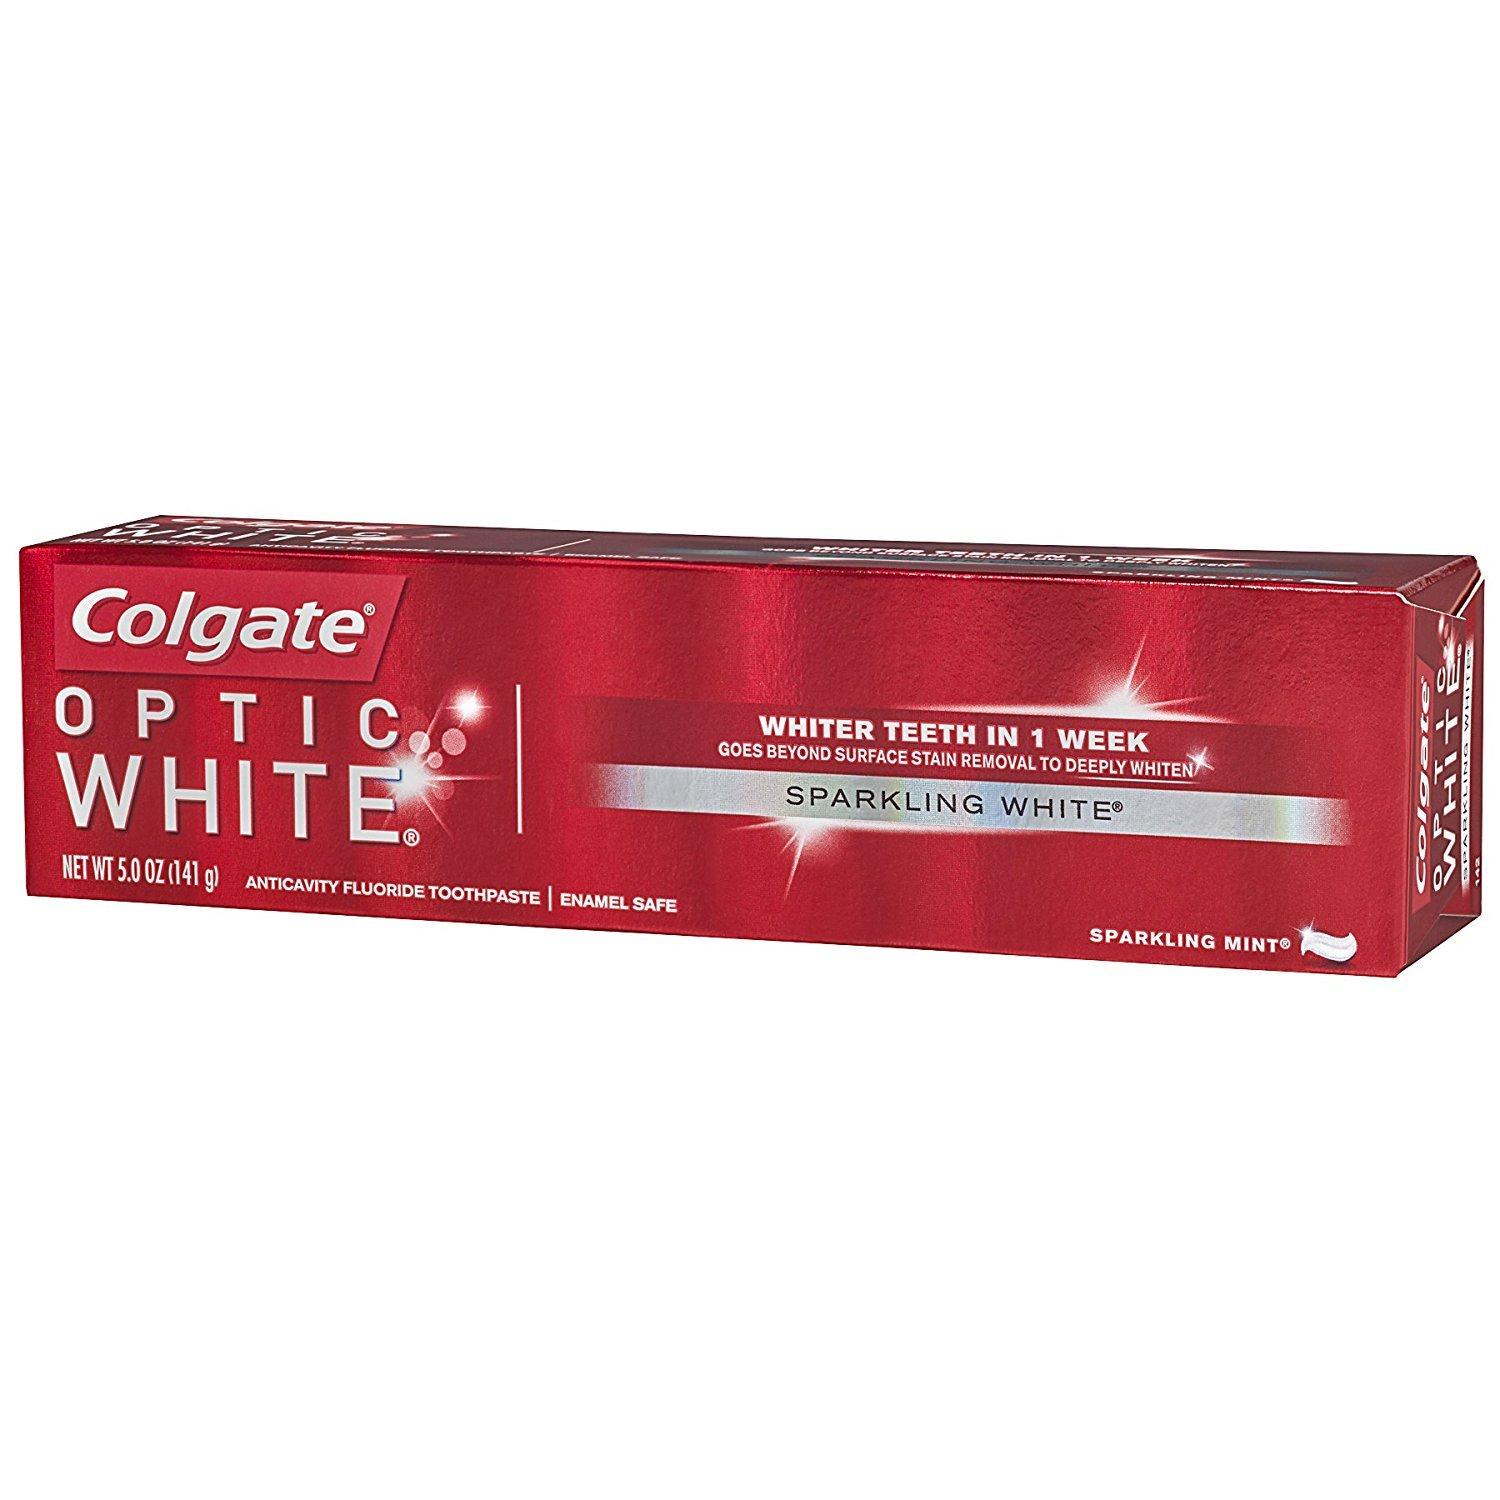 Colgate Optic White Whitening Toothpaste, Sparkling White, 5 oz